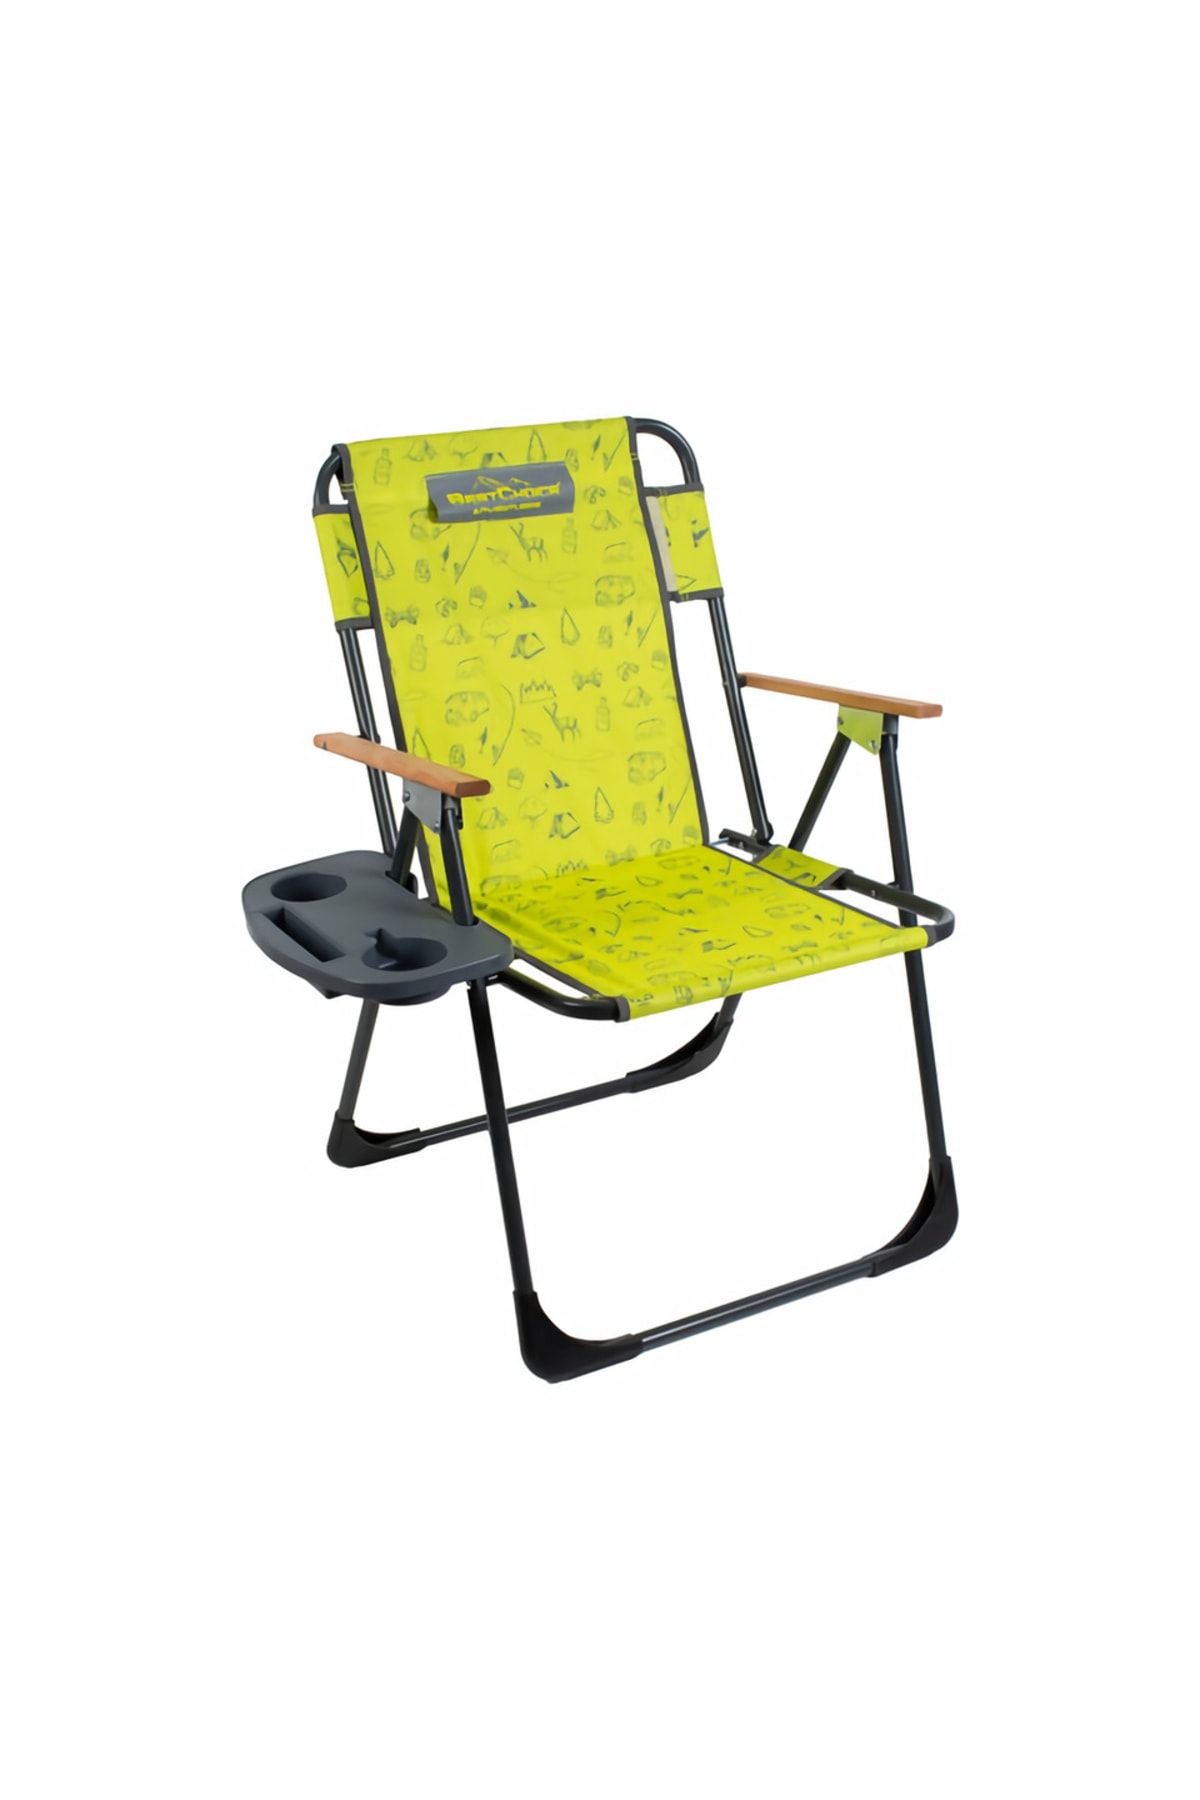 Bestchoice Best Choıce Kamp Ve Plaj Sandalyesi Katlanır Bardak Aparatlı Sarı